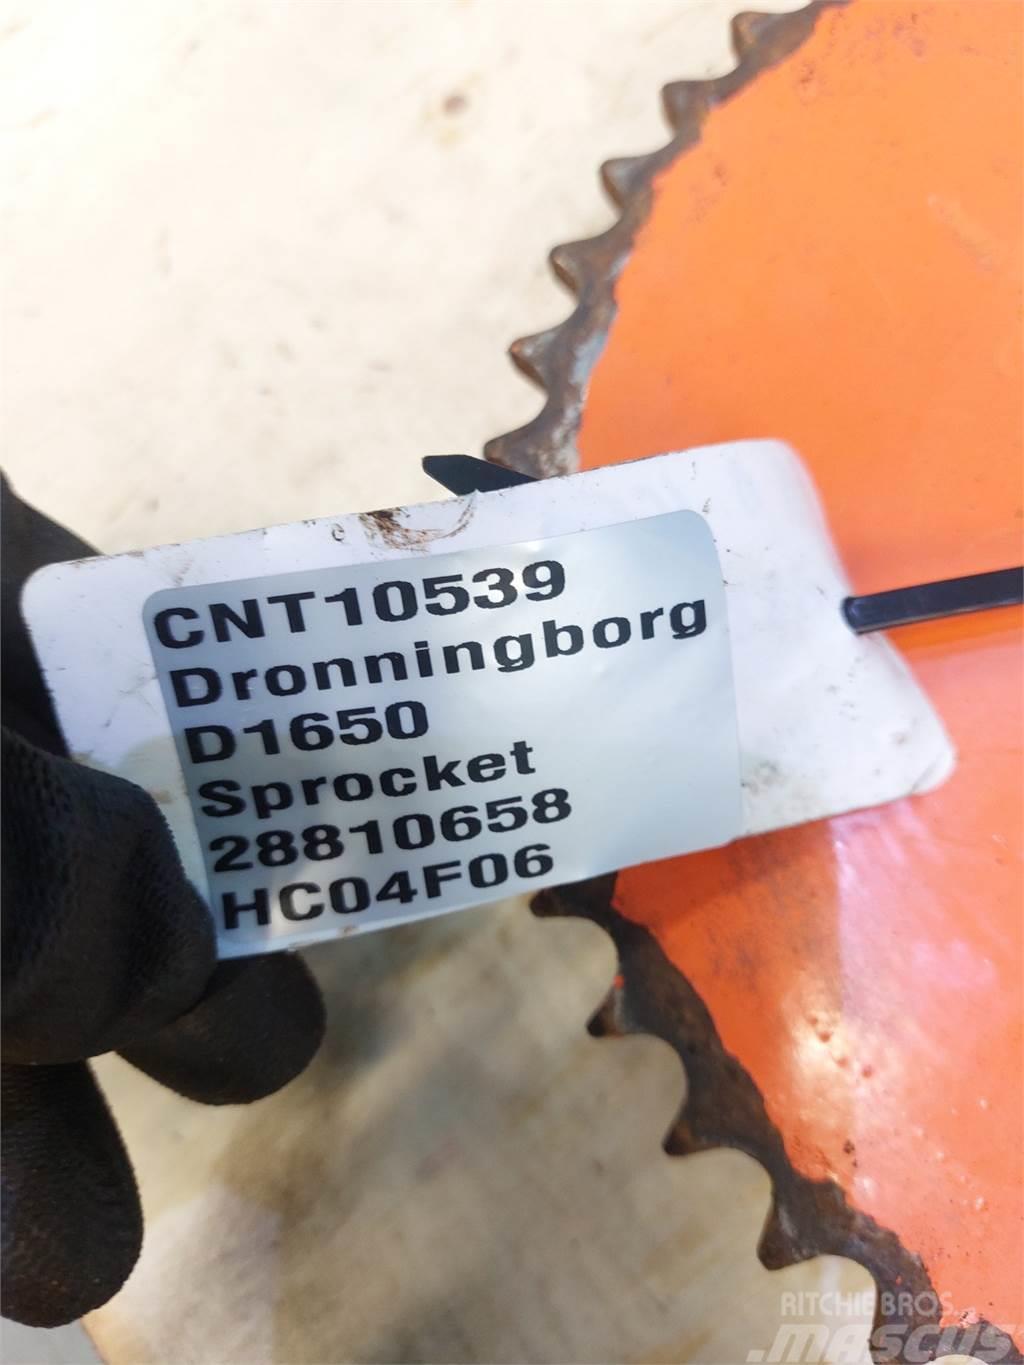 Dronningborg D1650 Ostale poljoprivredne mašine